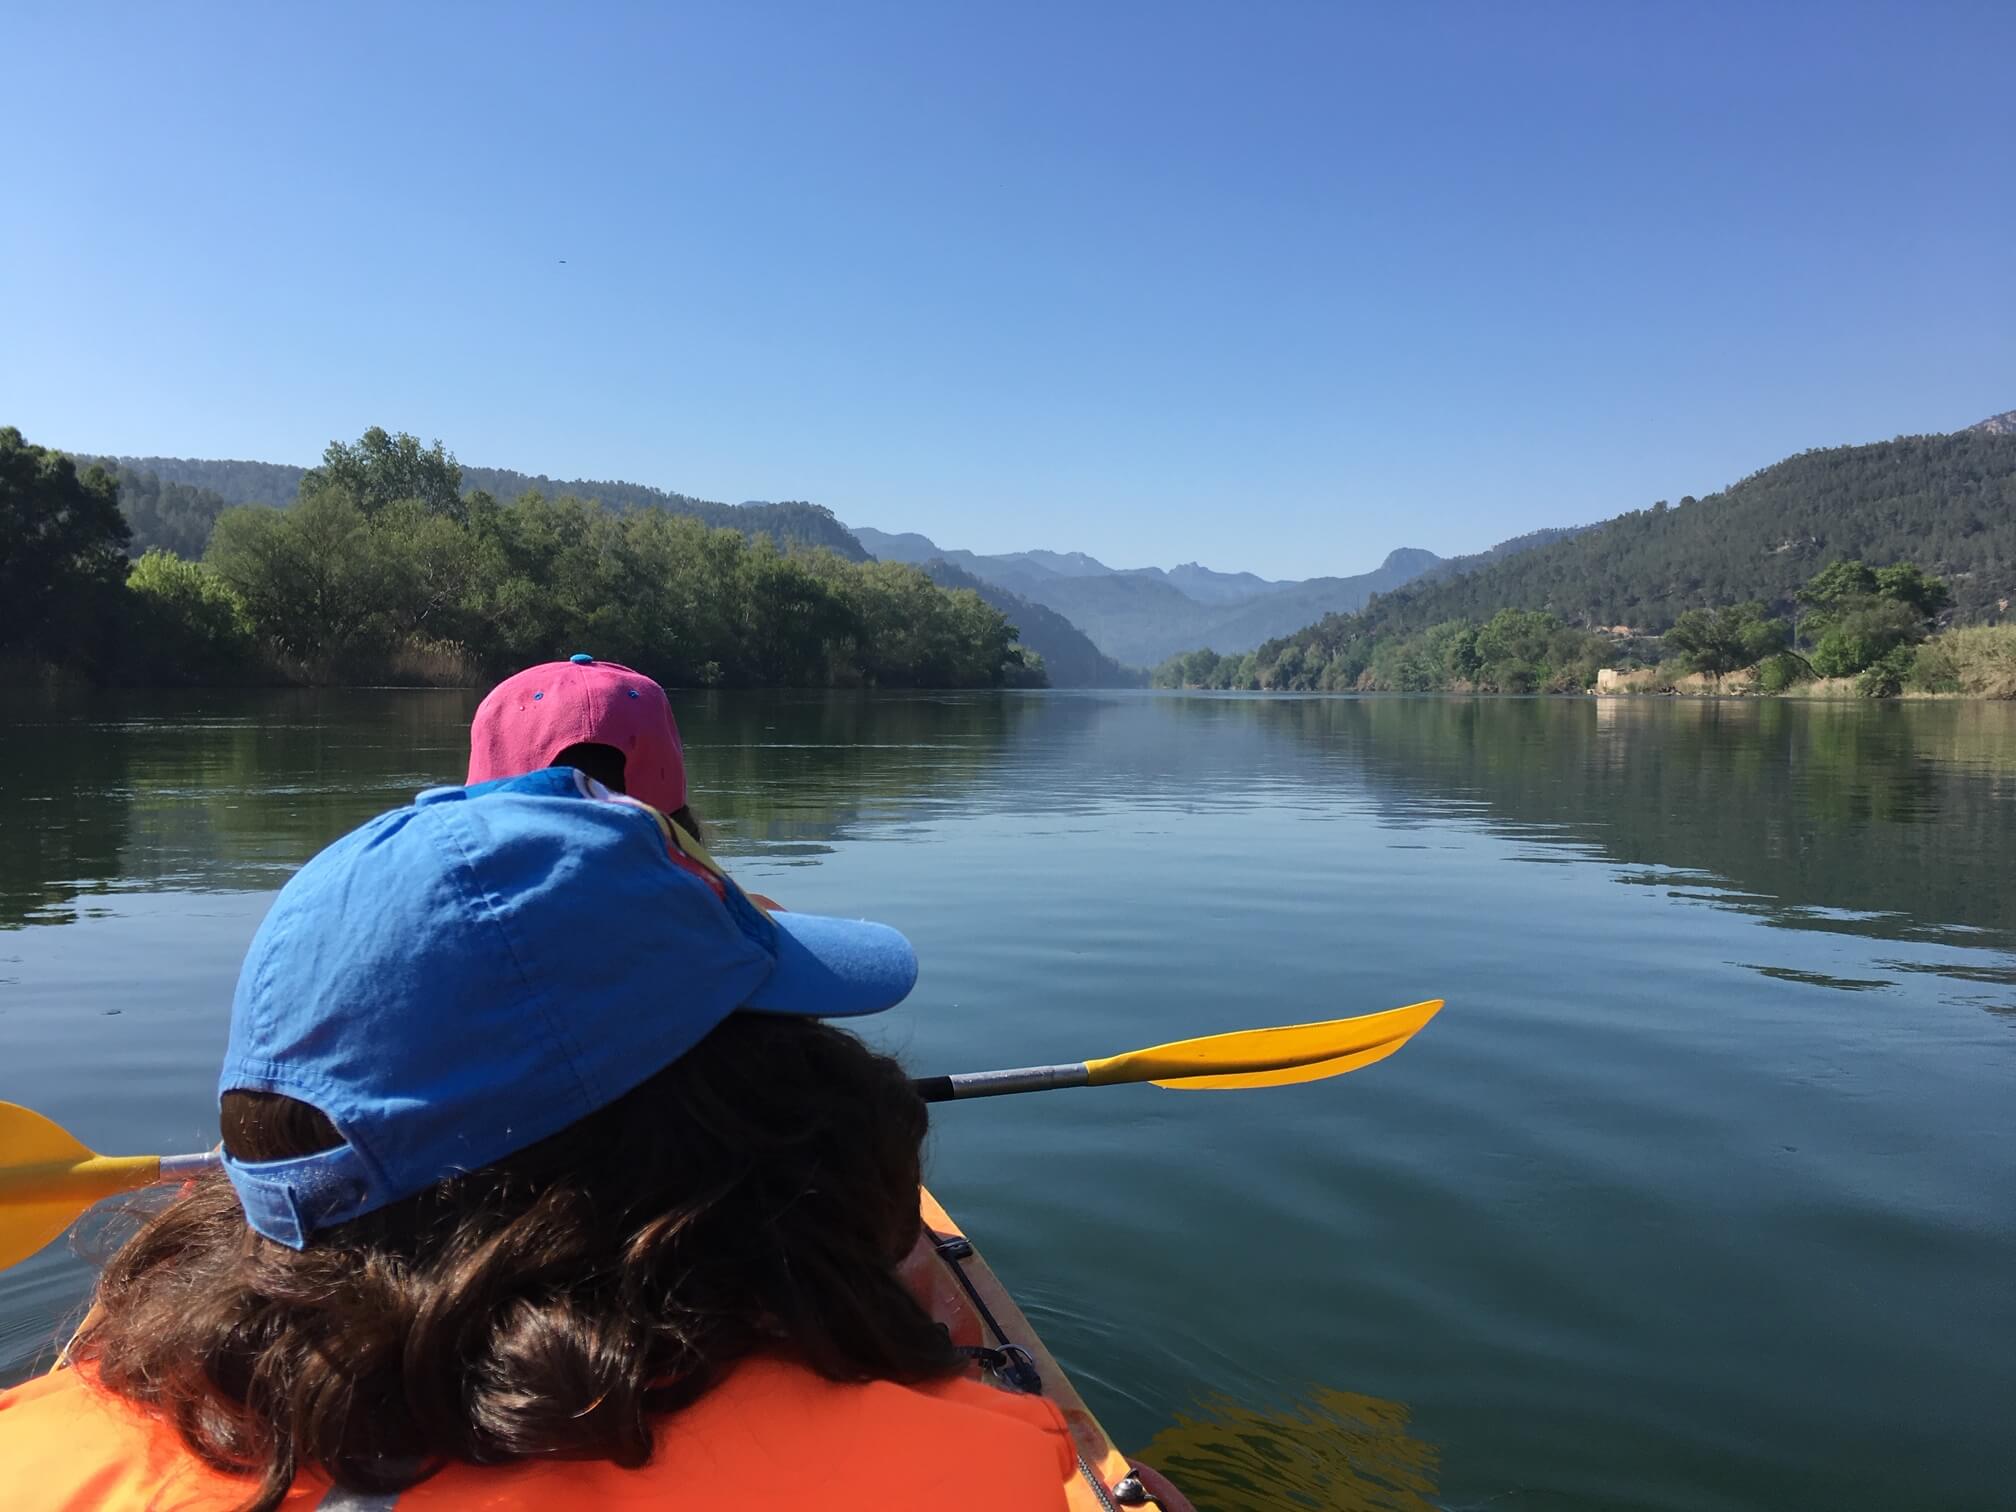 Touring kayak in Ebro river